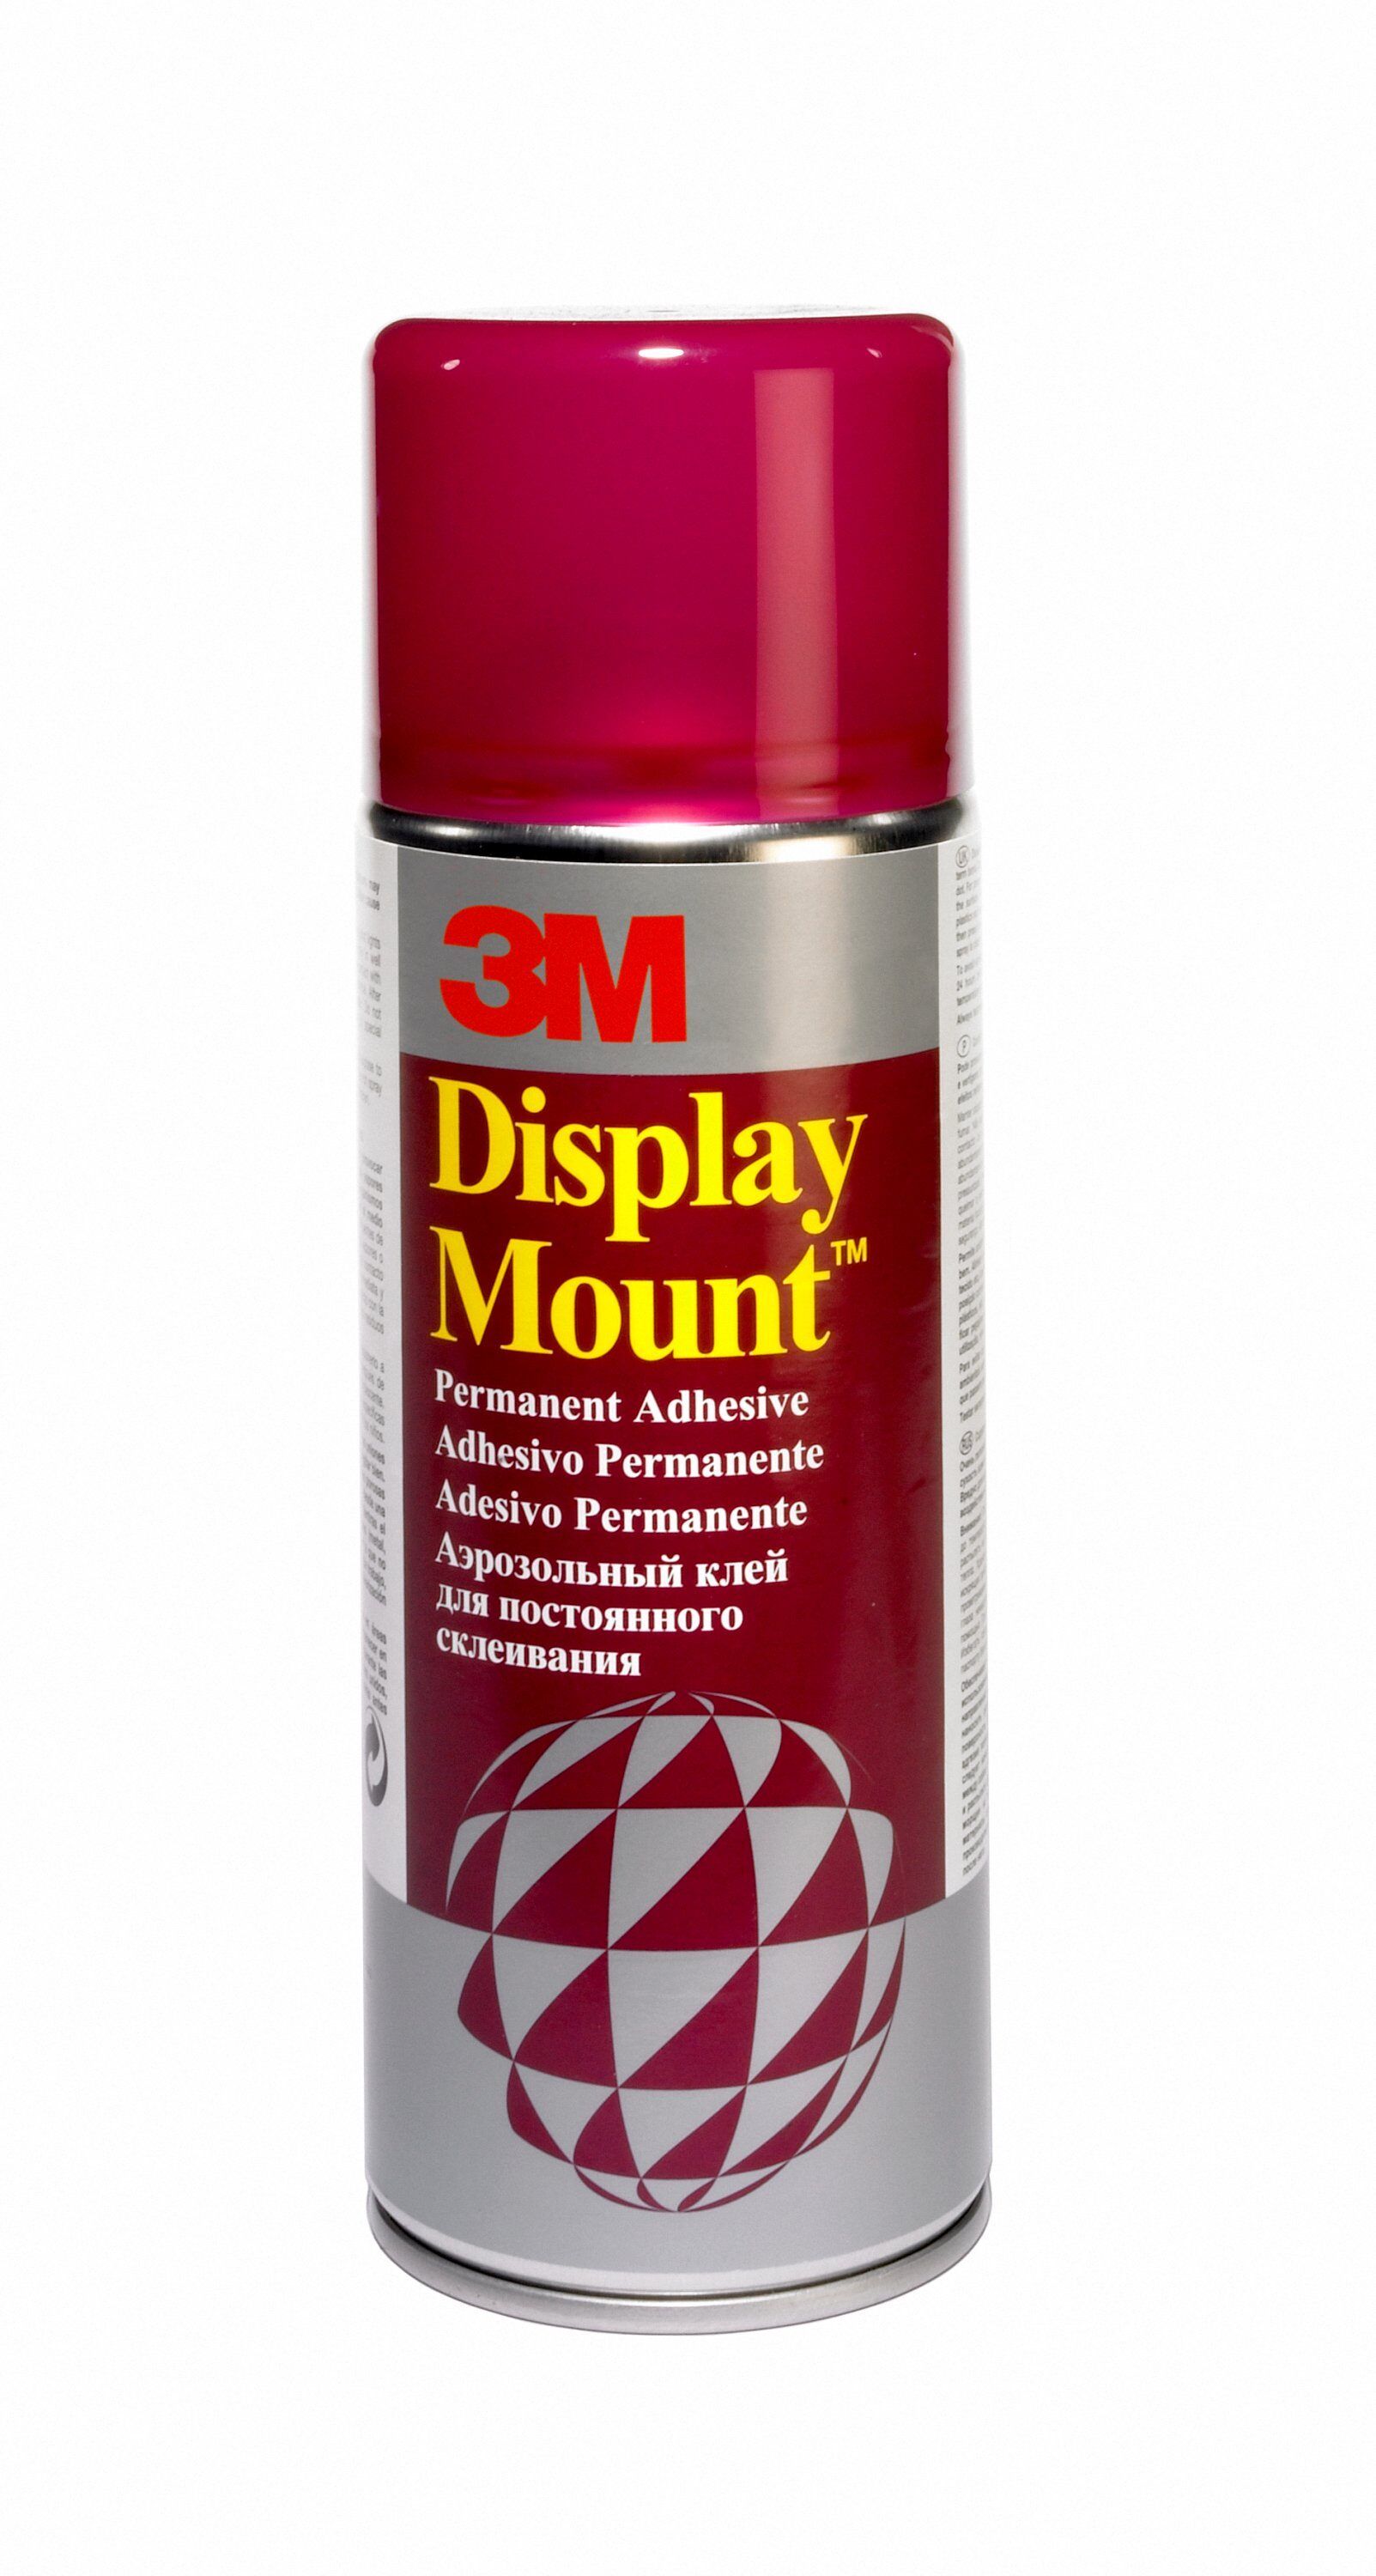 3M™ DisplayMount™ ragasztó aerosol - 400 ml (260 g), standépítéshez, montázsmunkához,hagyományos és hullámkartonok tartós és teherbíró rögzítésére